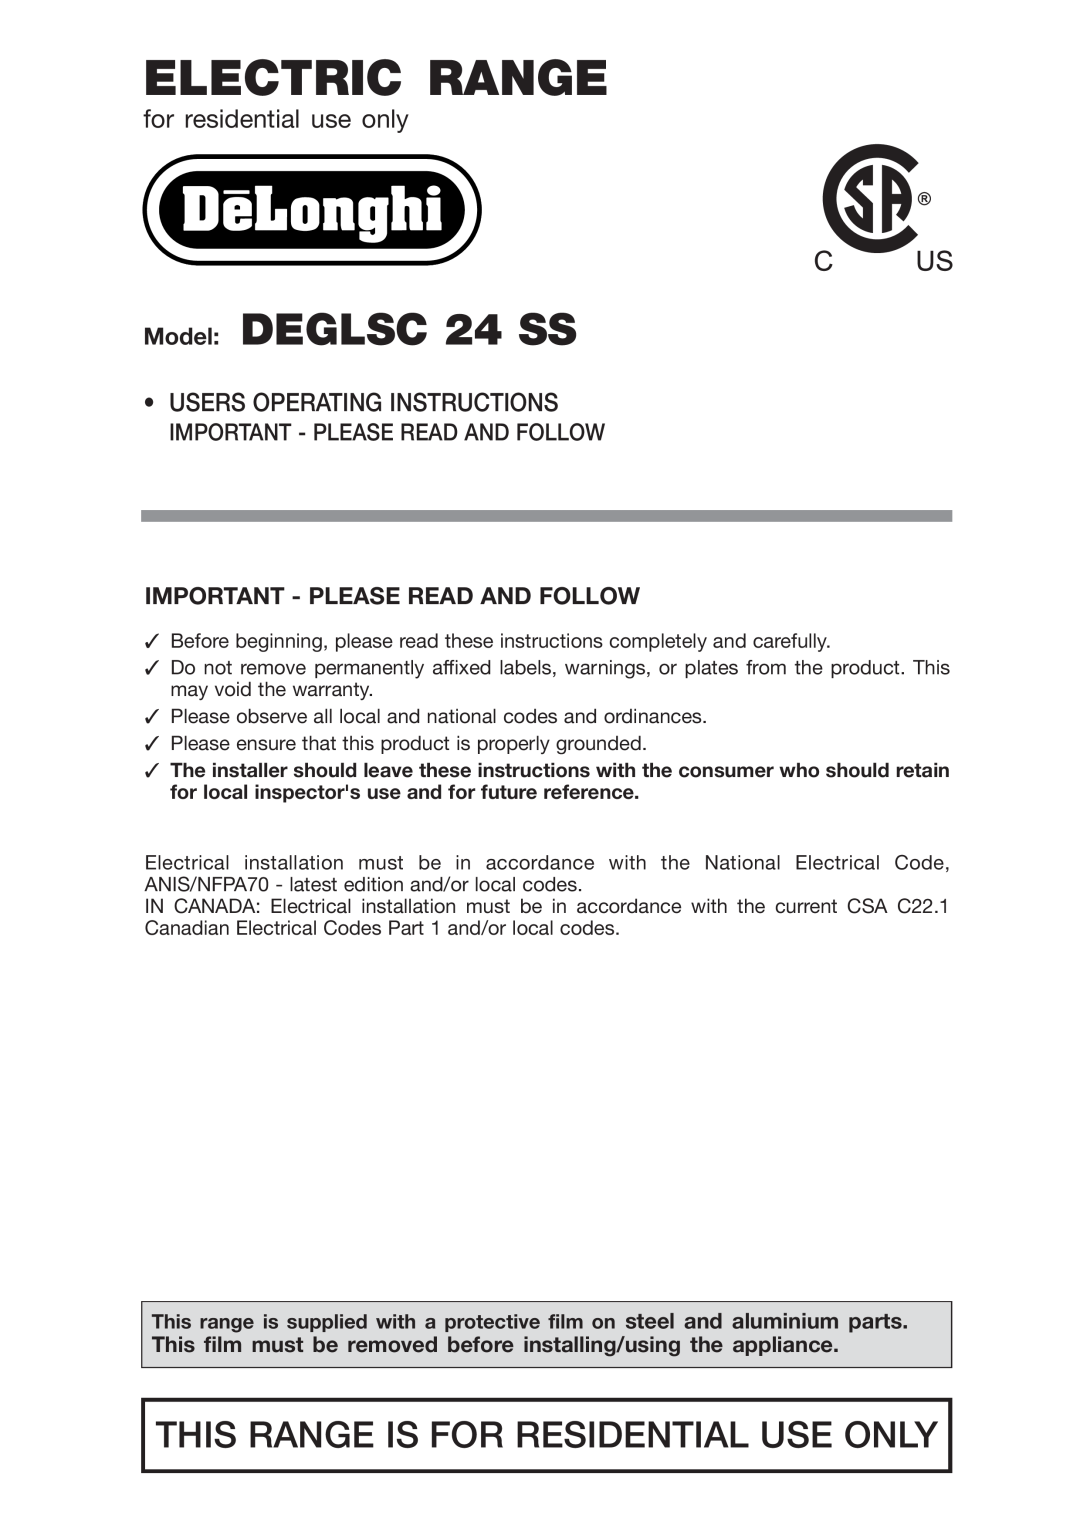 DeLonghi DEGLSC24SS warranty Important - Please Read And Follow, Electric Range, Model DEGLSC 24 SS 